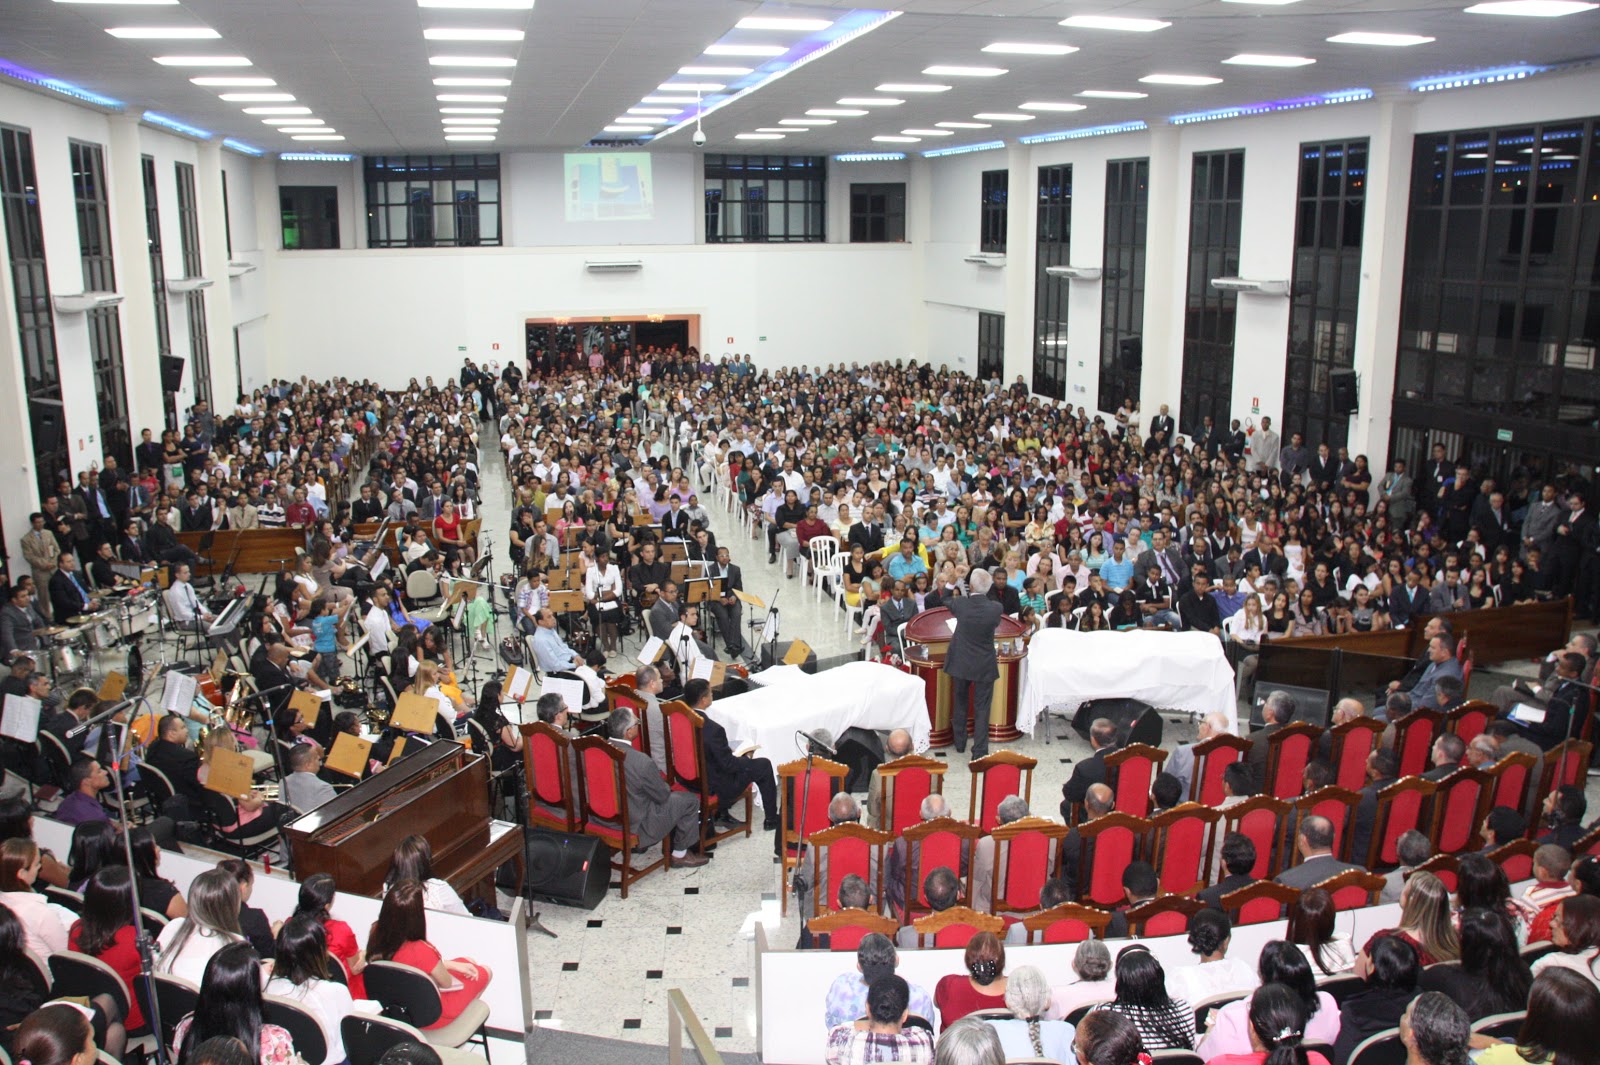 Igreja evangélica reúne mais de 30 mil fiéis para culto de centenário no RN, Rio Grande do Norte